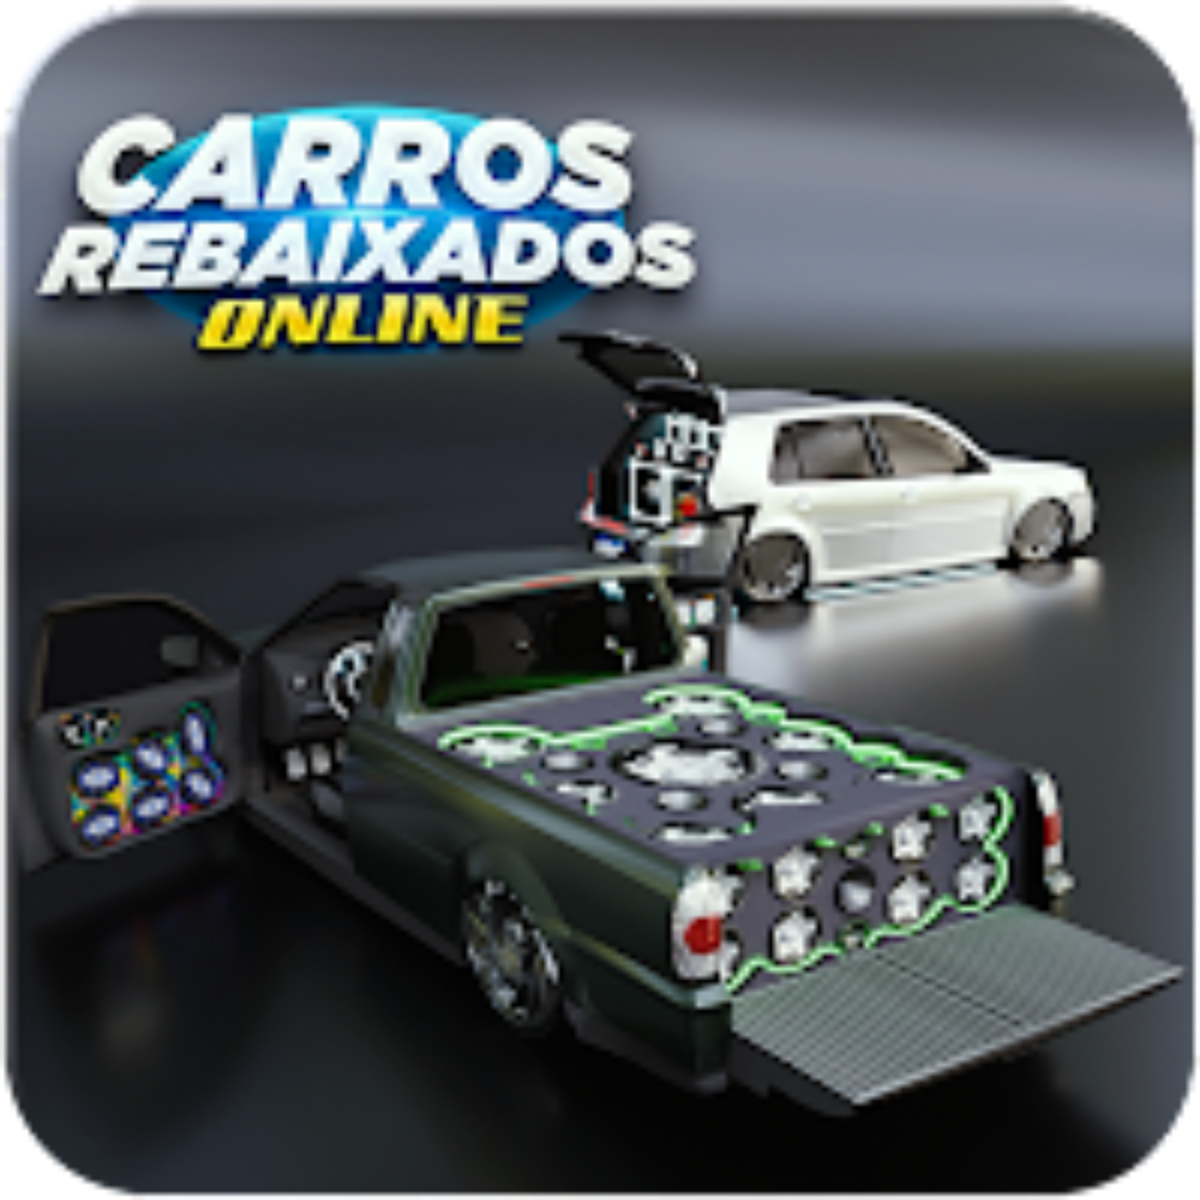 Carros Rebaixados Brasil Mod Apk Dinheiro Infinito v10 - W Top Games